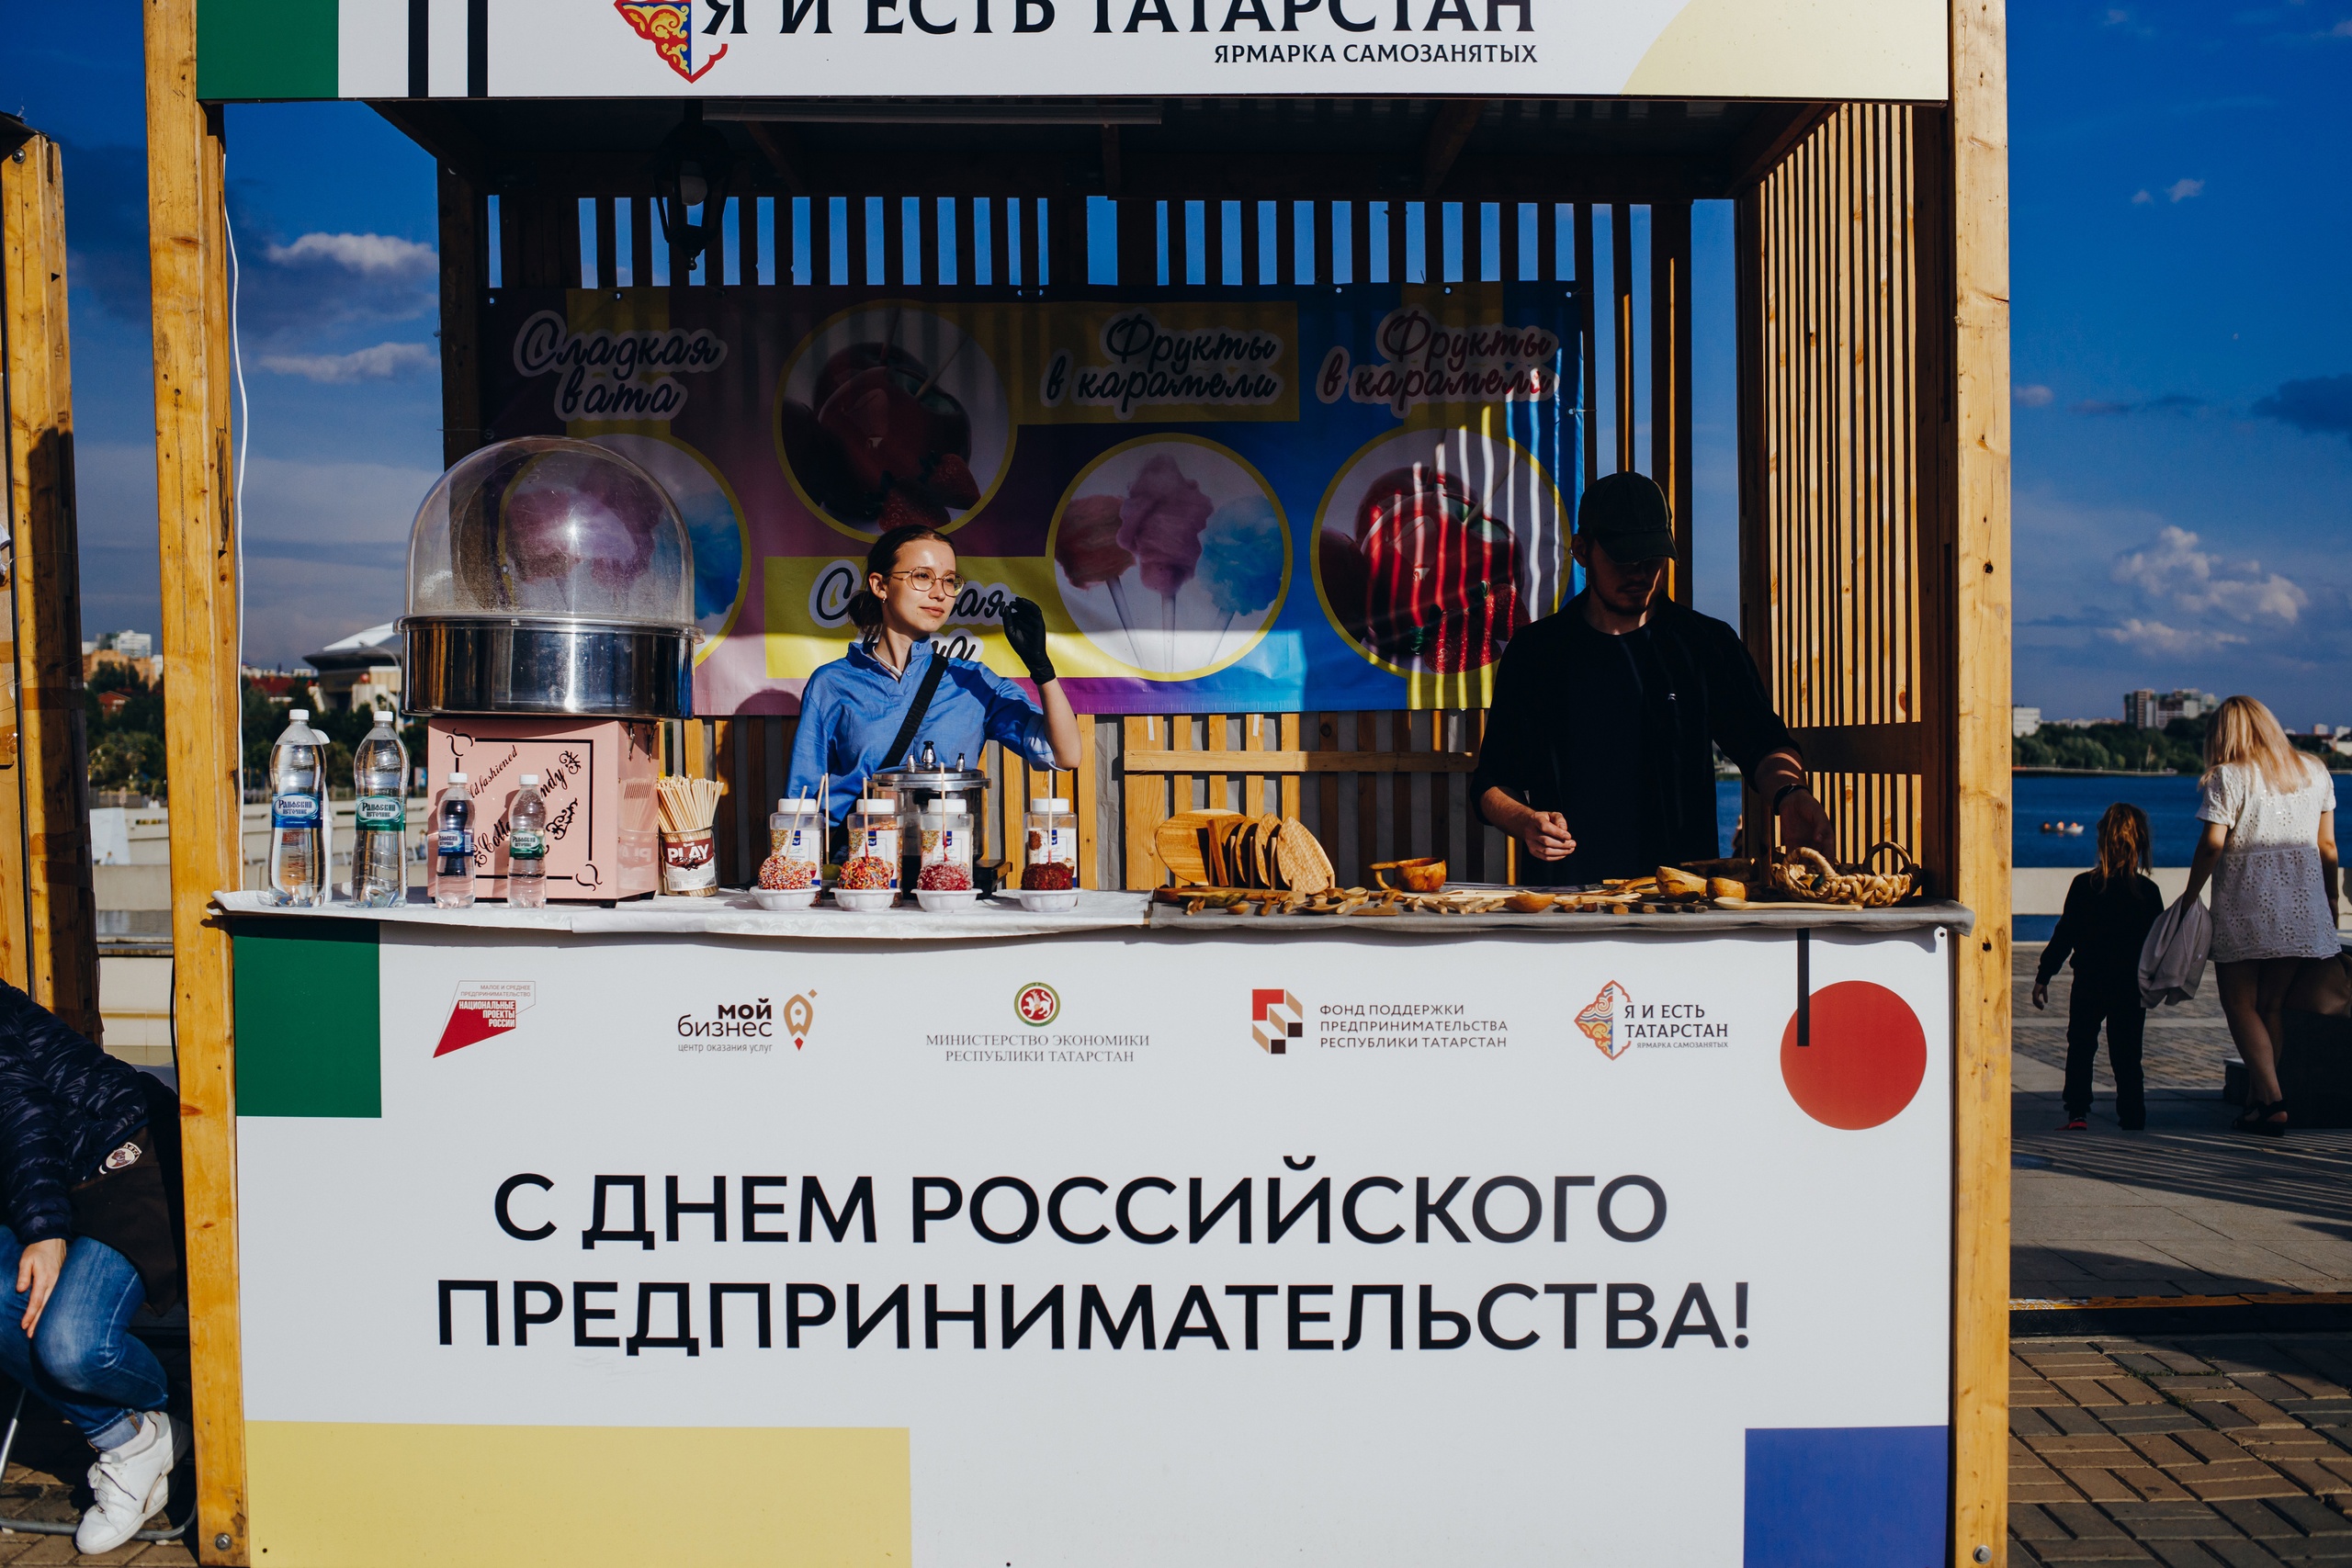 Татарстанские самозанятые заработали 6 млн рублей на ярмарке «Я и есть Татарстан»